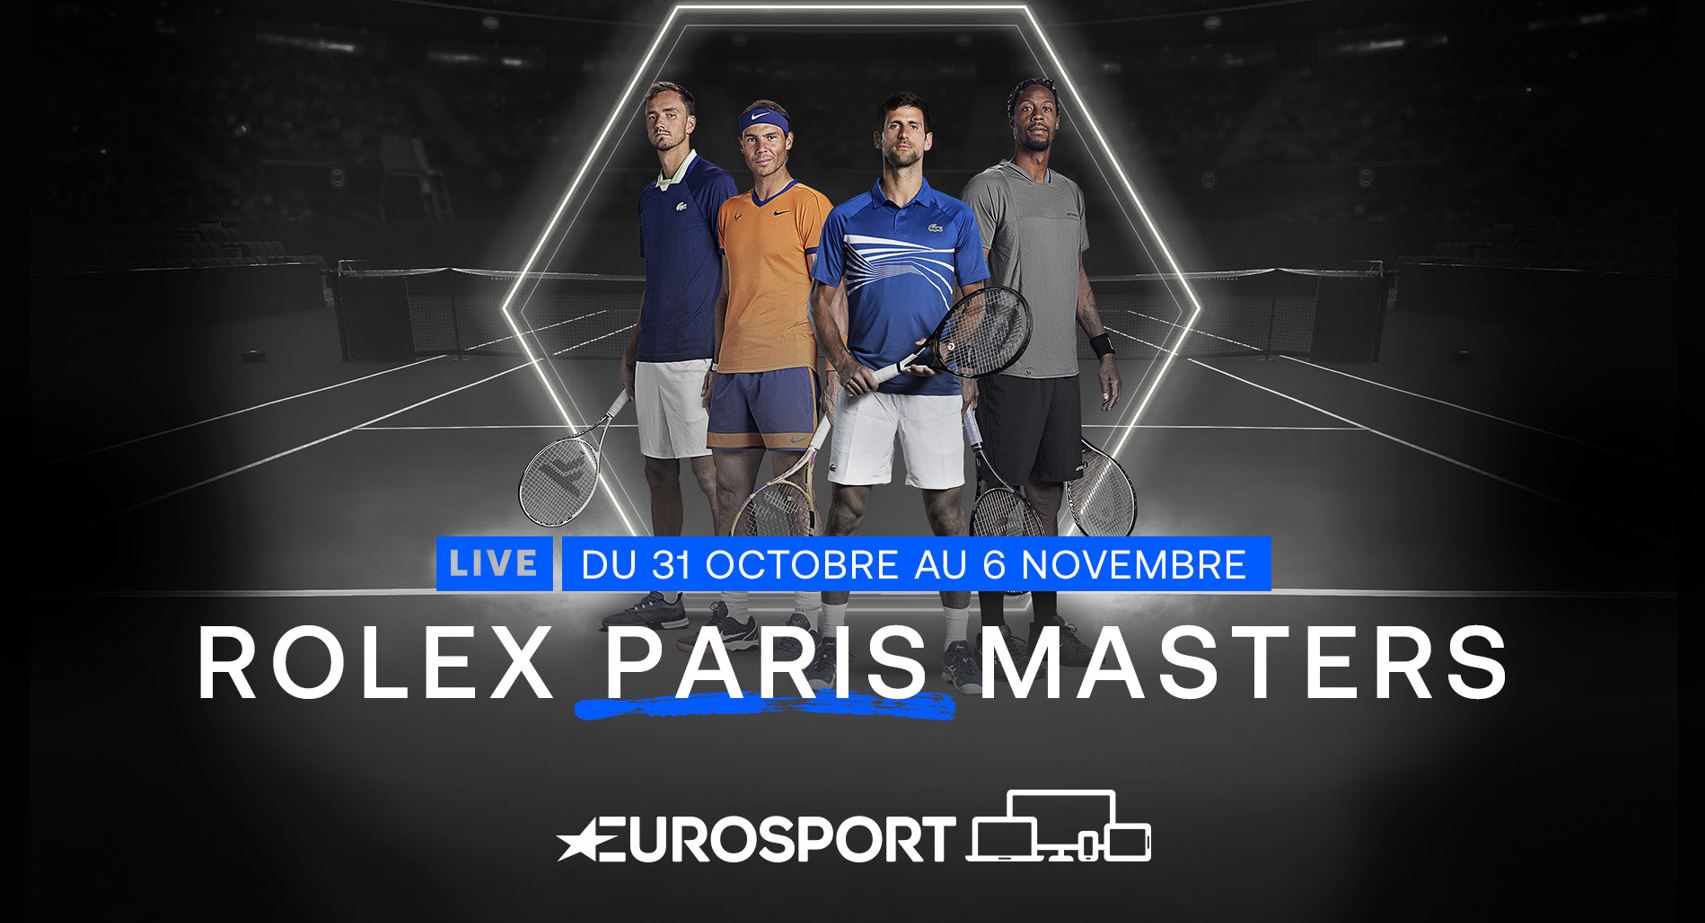 Rolex Paris Masters 20222 - Le tournoi parisien à suivre en intégralité sur Eurosport